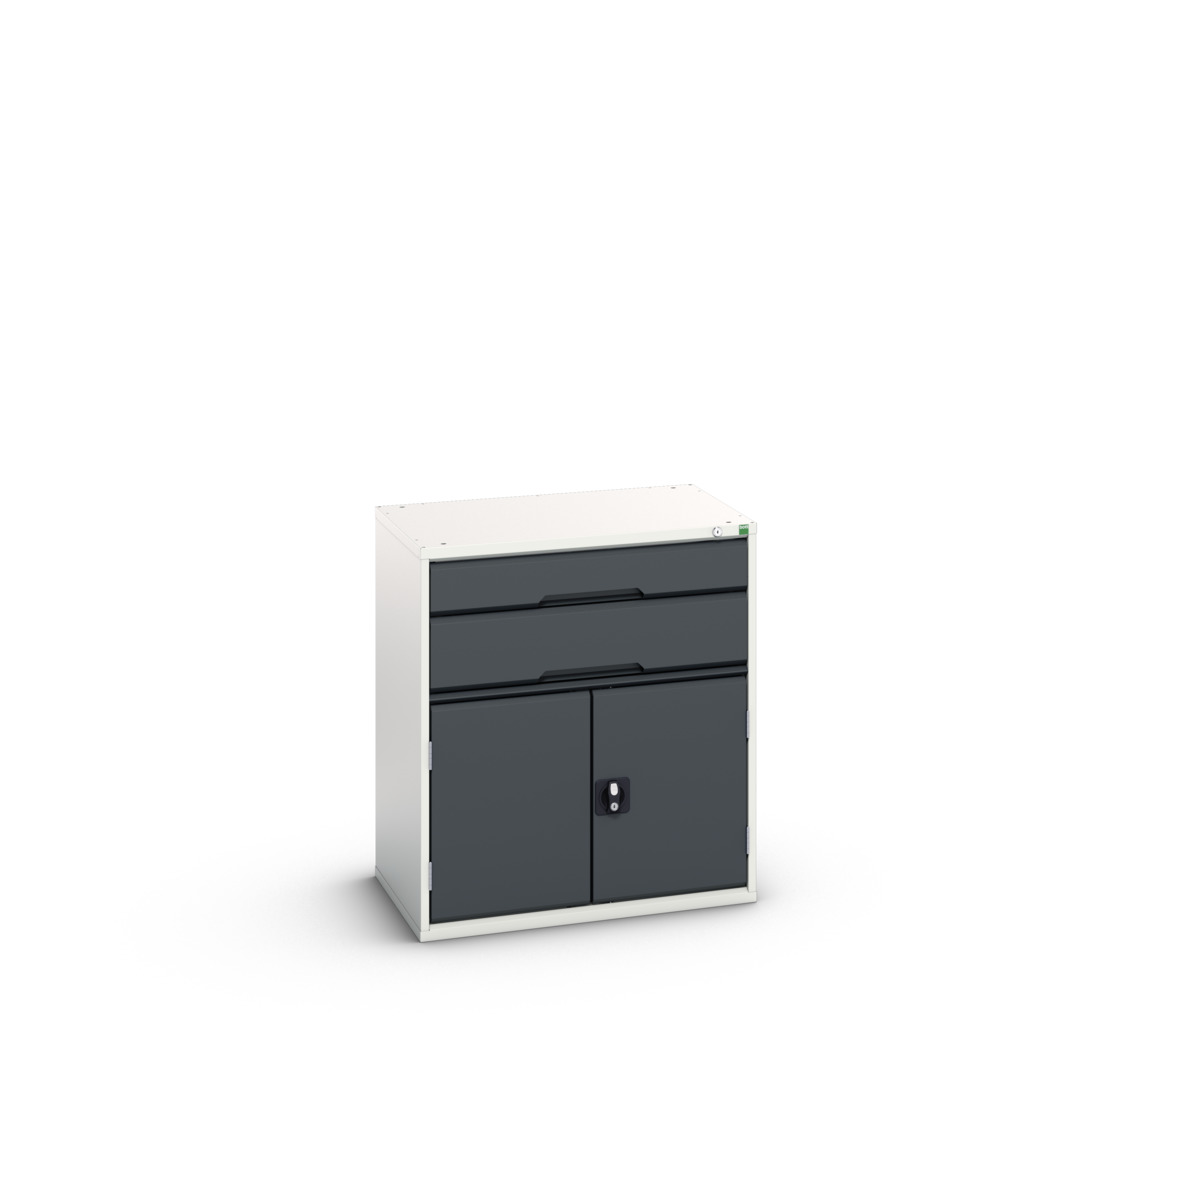 16925137. - verso drawer-door cabinet